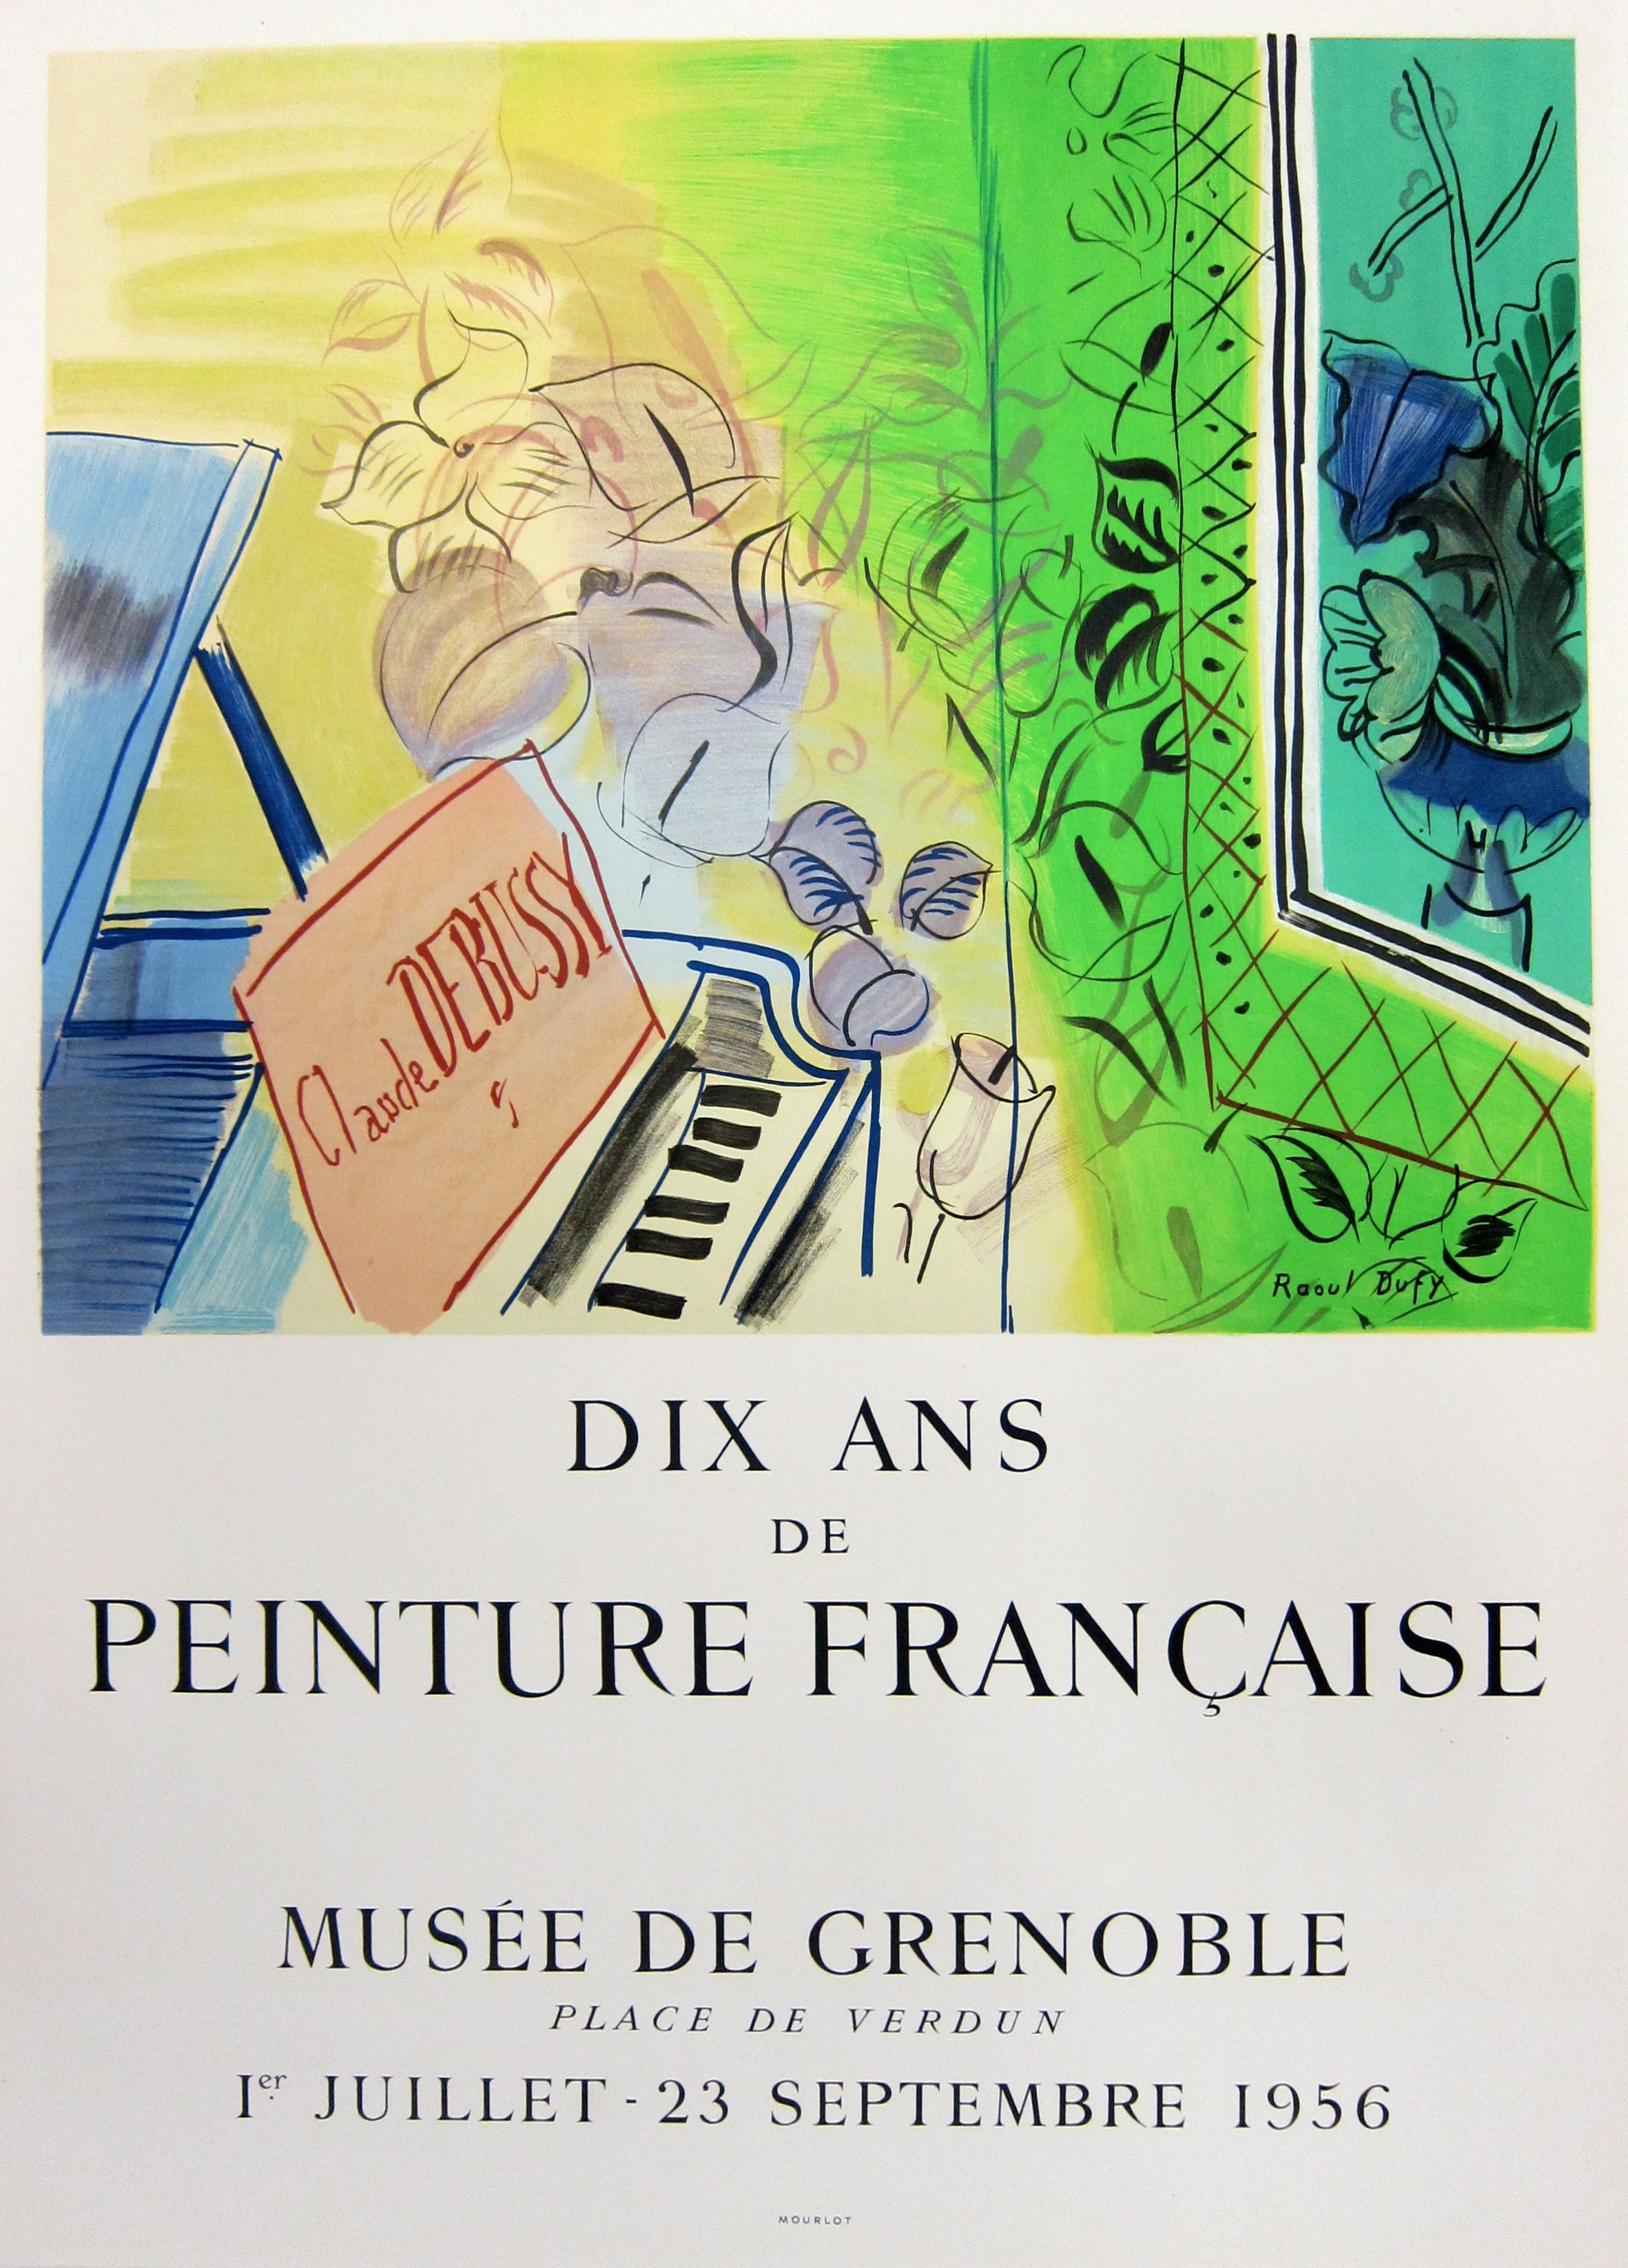 Hommage à Claude Debussy - Institut Franais D'cosse (d'après) Raoul Dufy, 1966